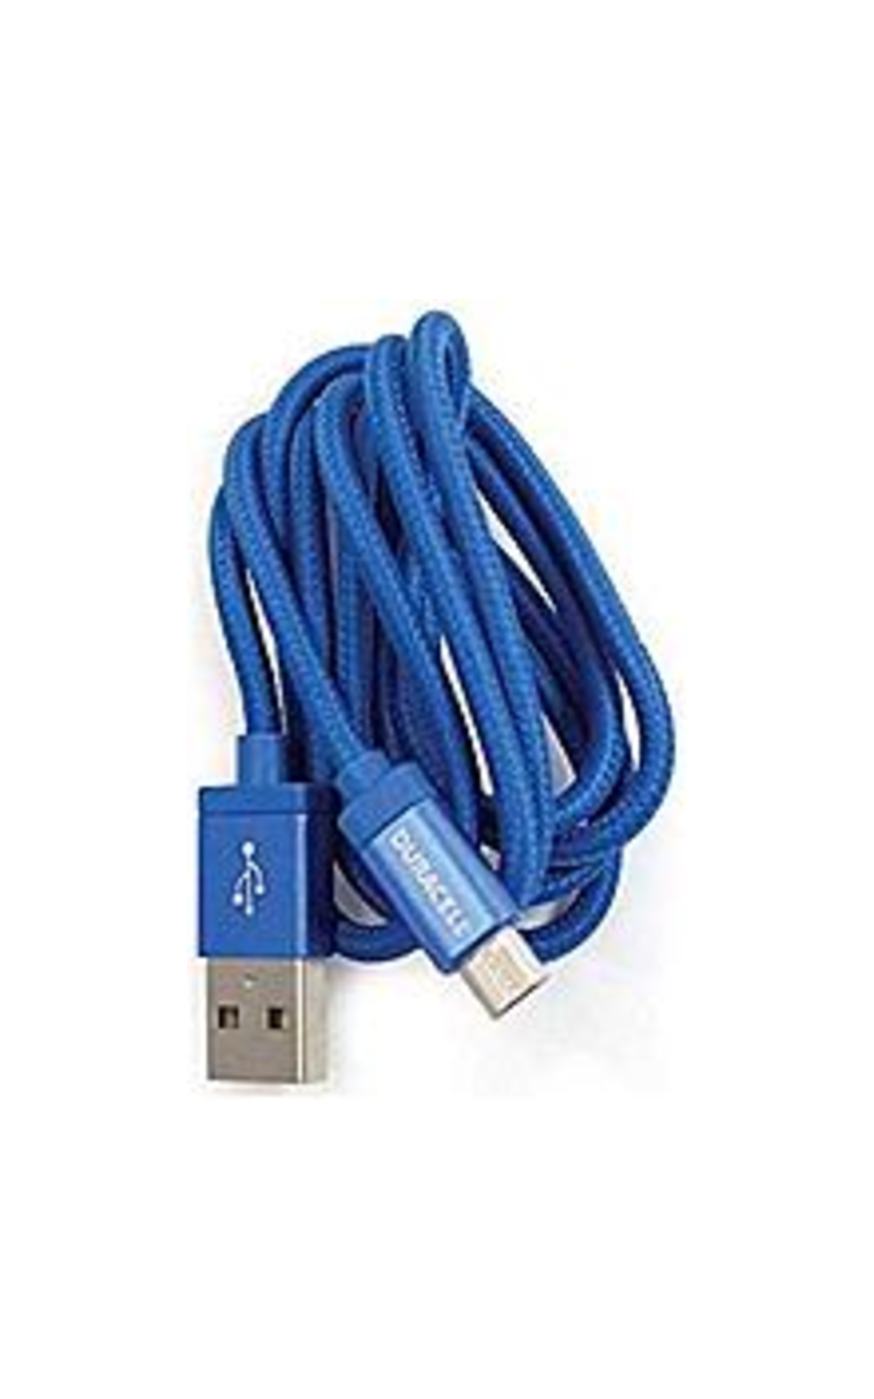 Duracell LE2178 3-Feet Braided Micro USB Cord - Blue